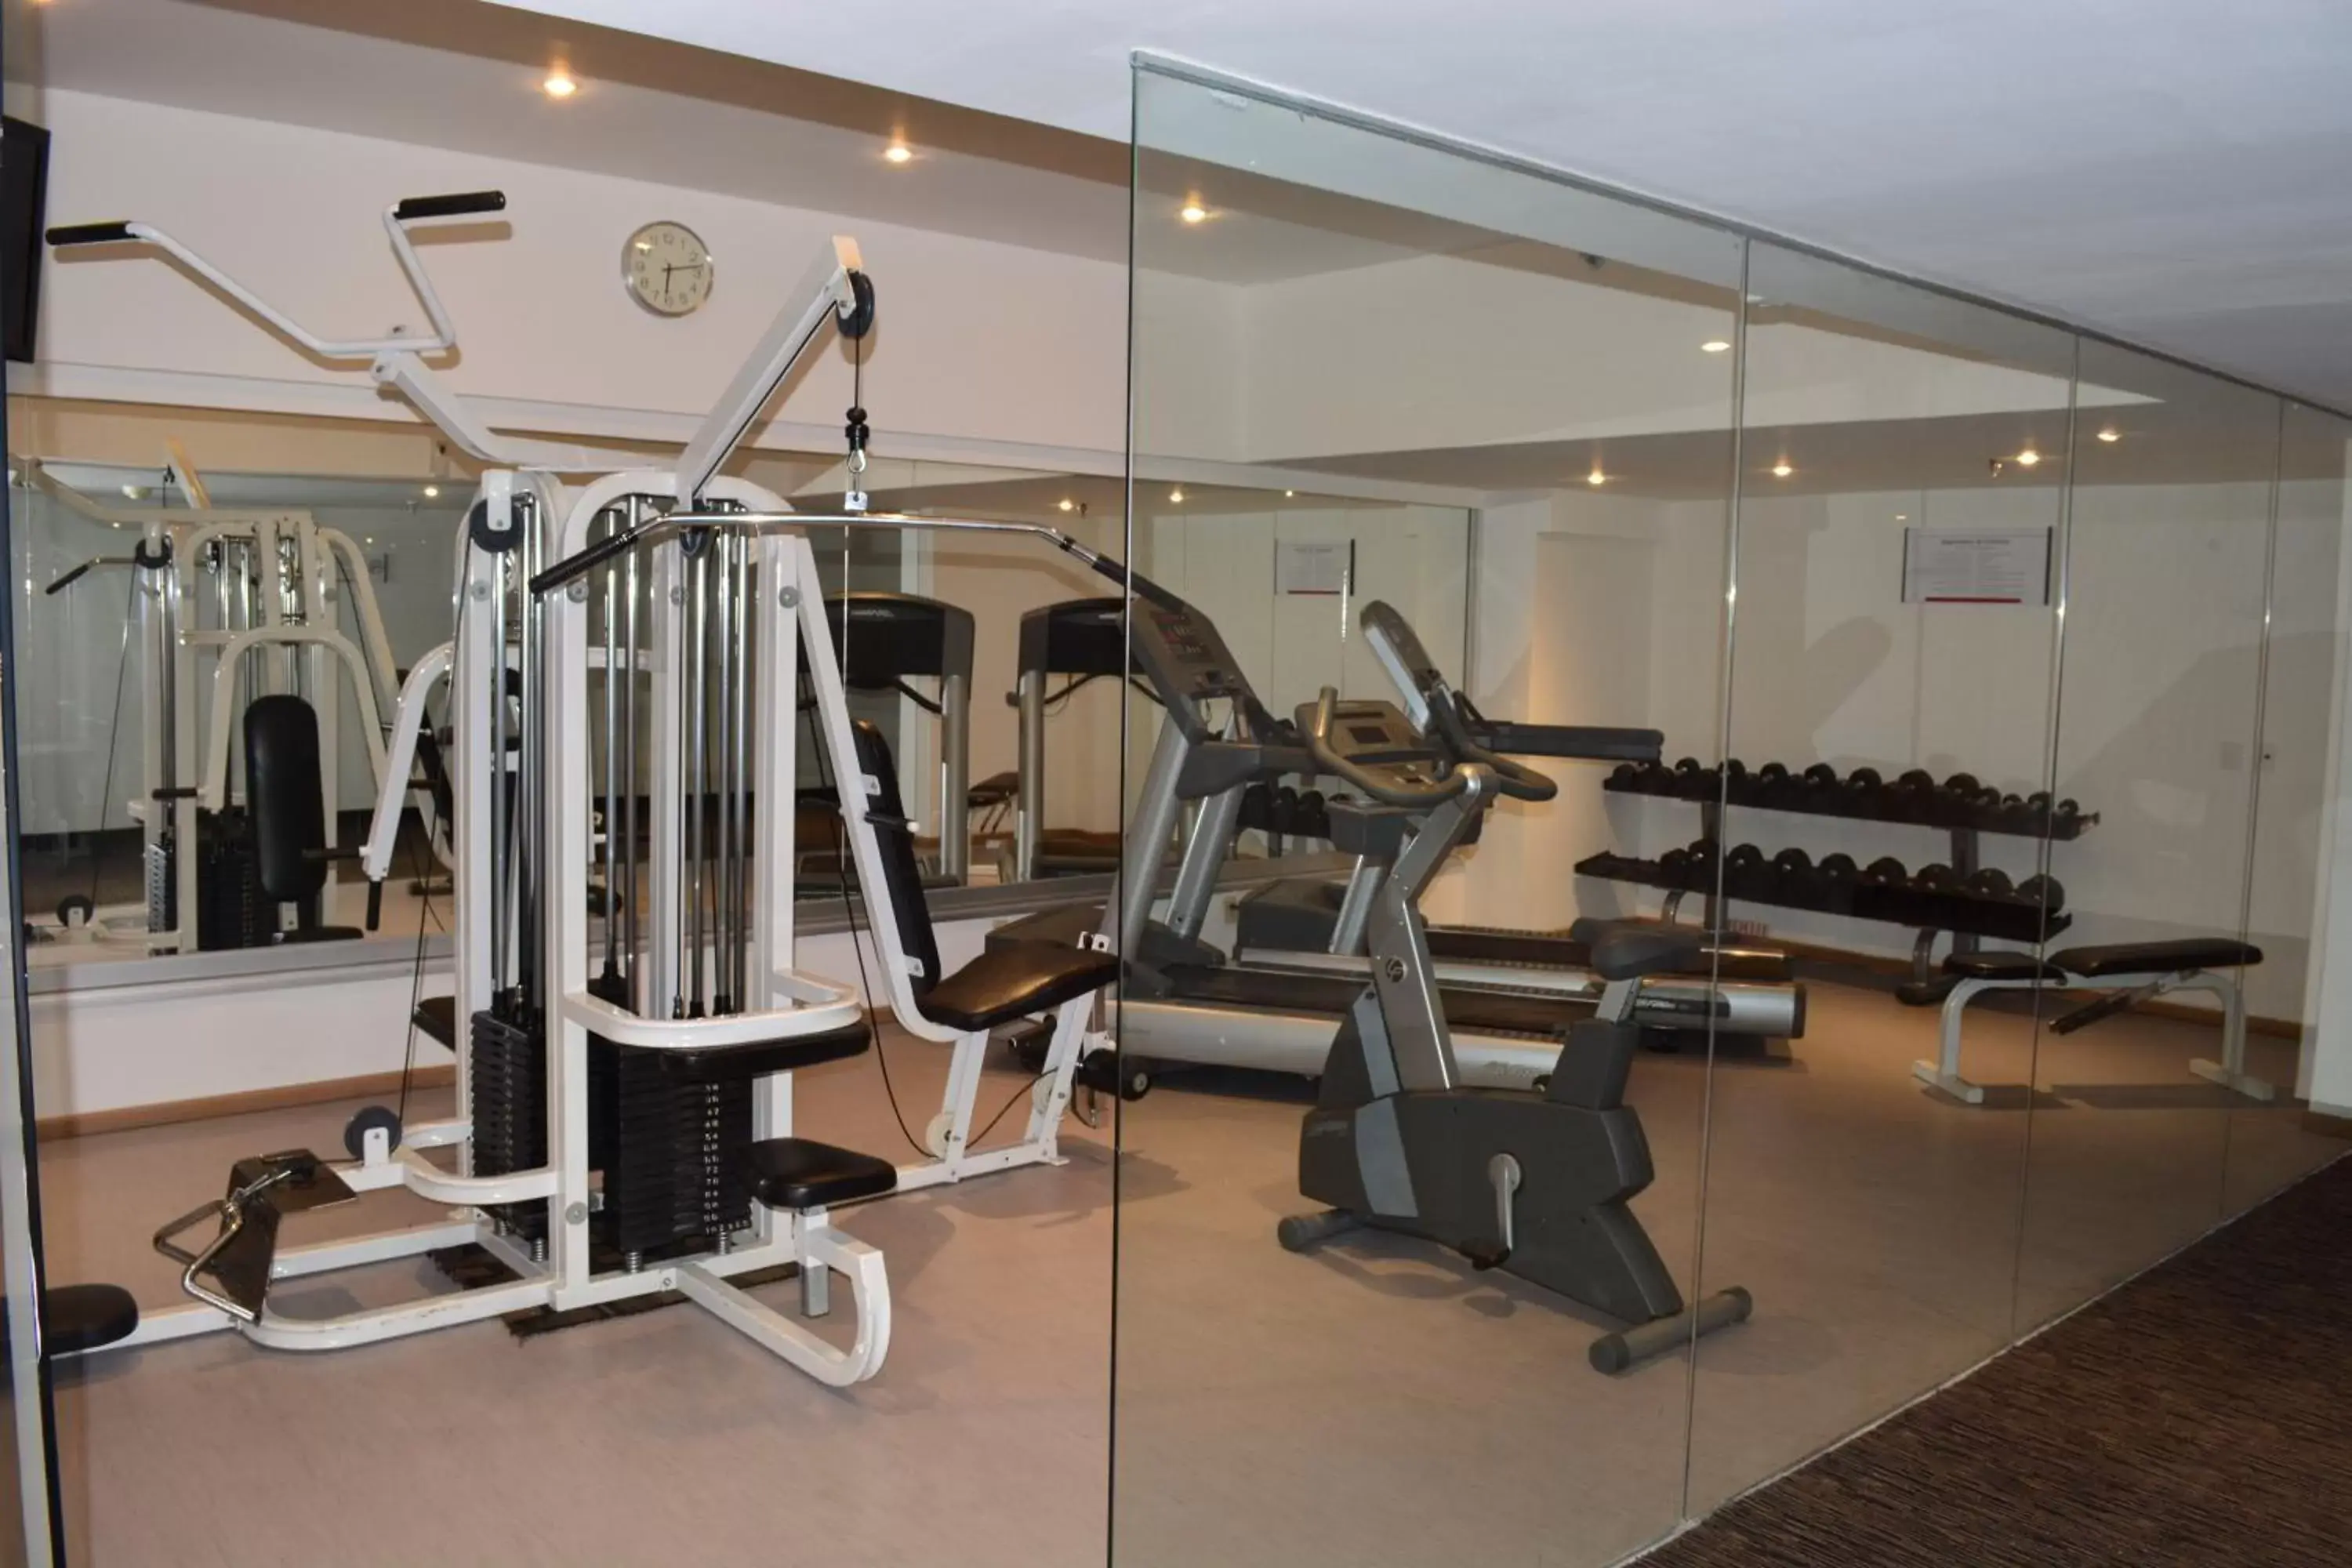 Fitness centre/facilities, Fitness Center/Facilities in Fiesta Inn Tlalnepantla